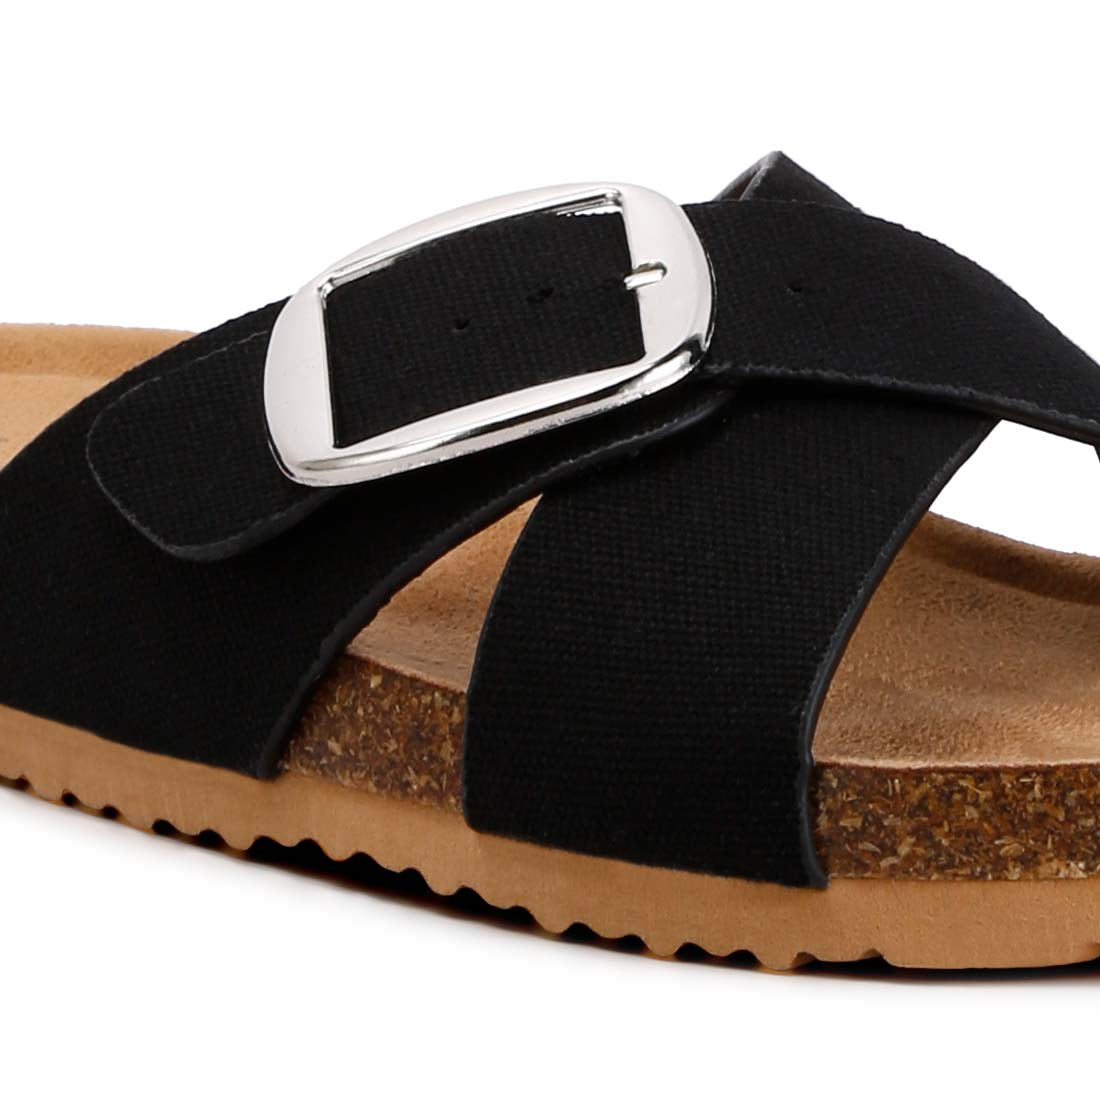 buckle slip on sandals#color_black